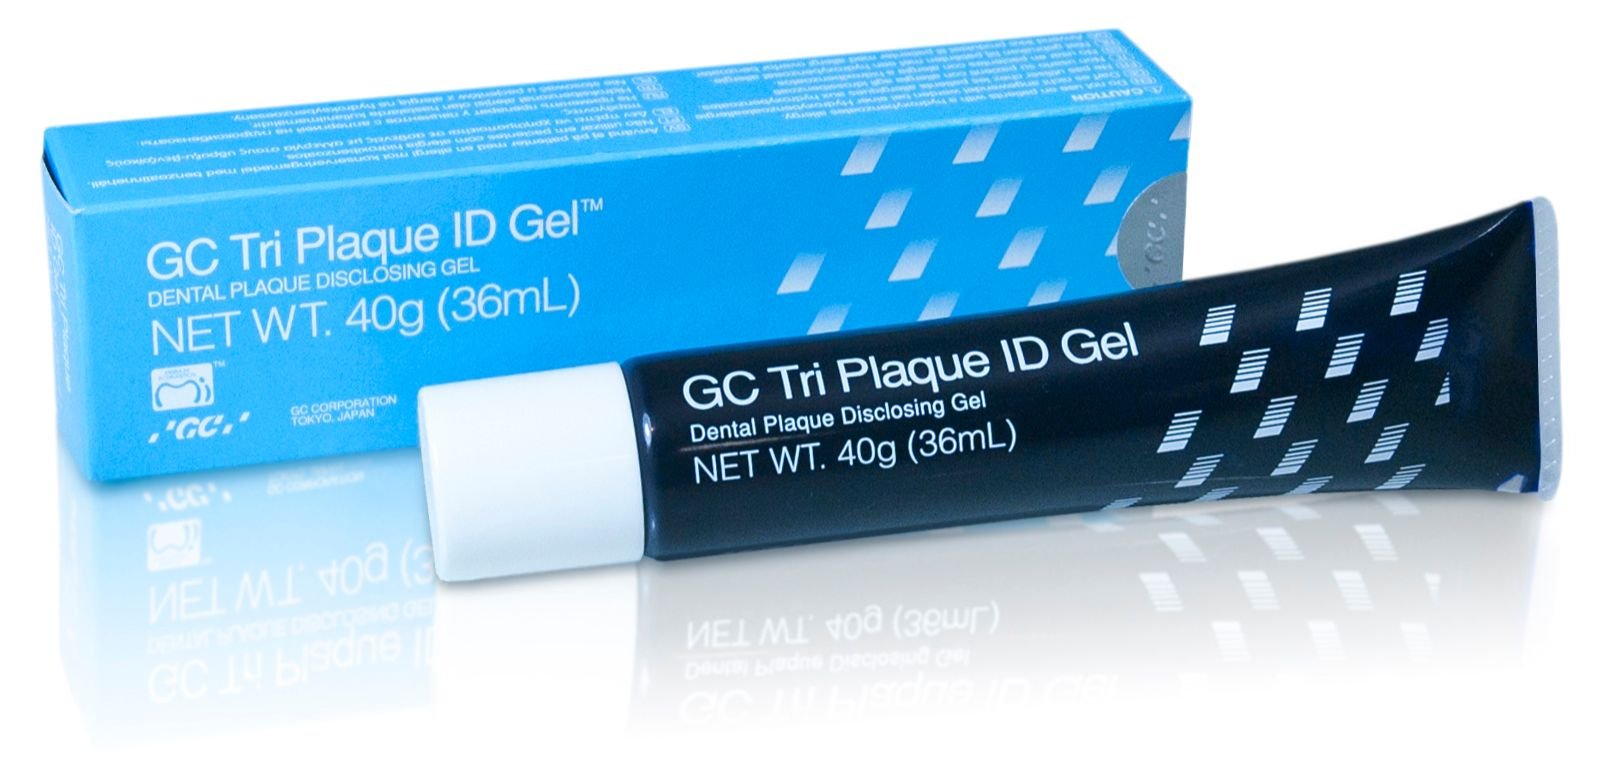 GC Tri Plaque ID Gel™